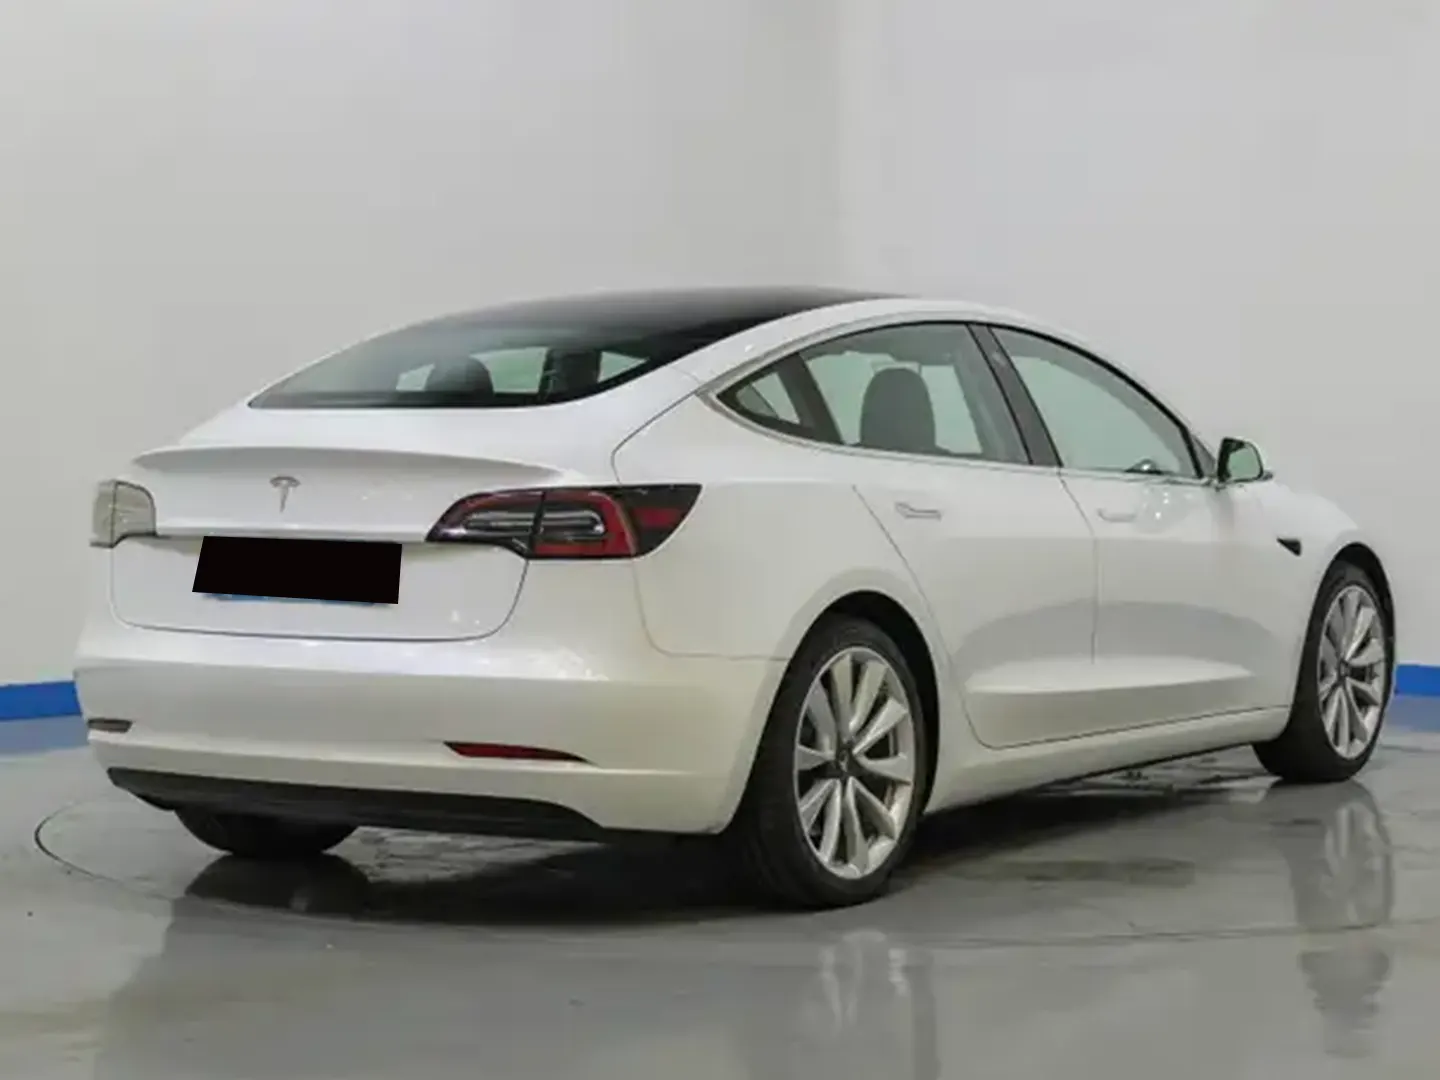 Sıfır Peşinatsız İkinci El Kredisiz Araç Tesla Model 3